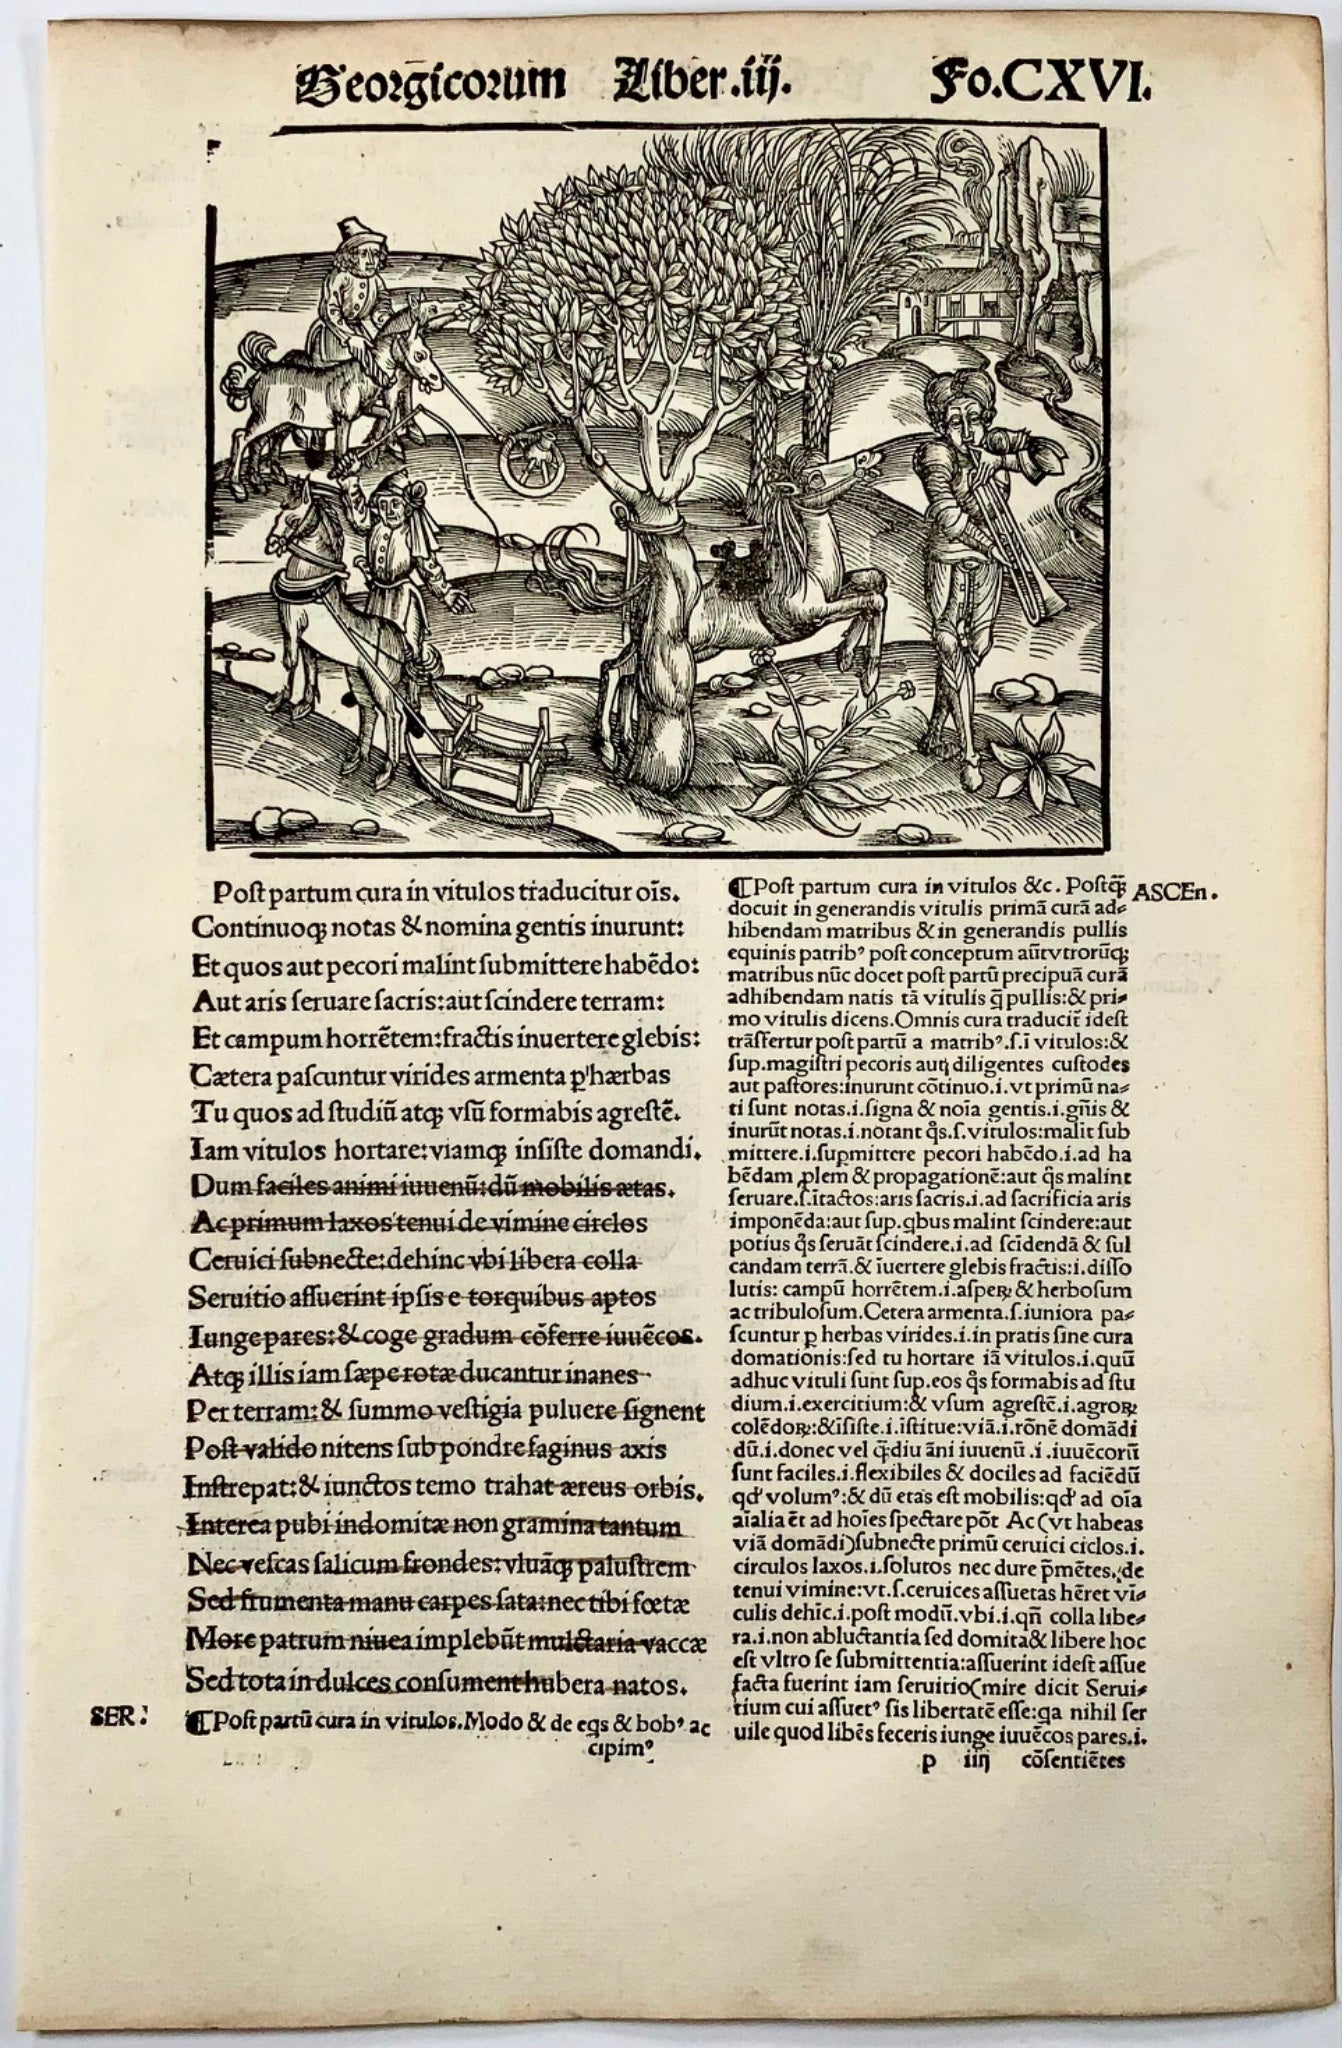 1502 Scena arcadica, tromba, xilografia incunabile, Georgiche di Virgilio, agricoltura